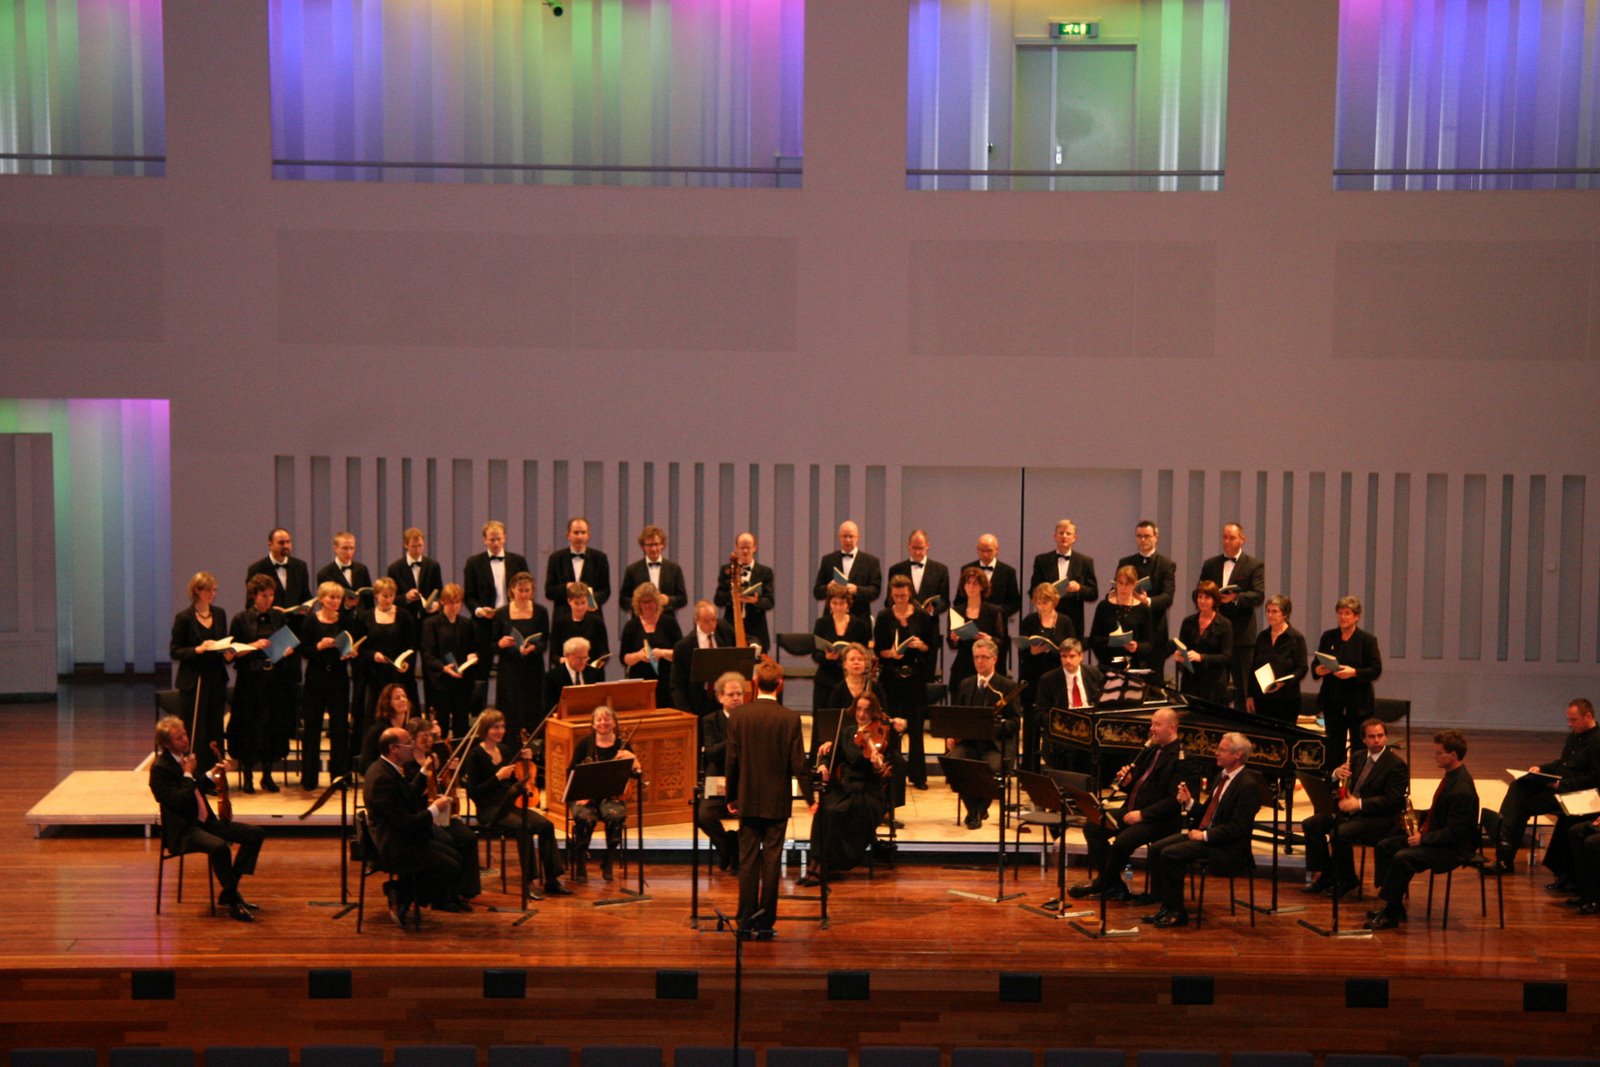 20081109-uitvoering-bach-in-concertzaal-tilburg-014-2